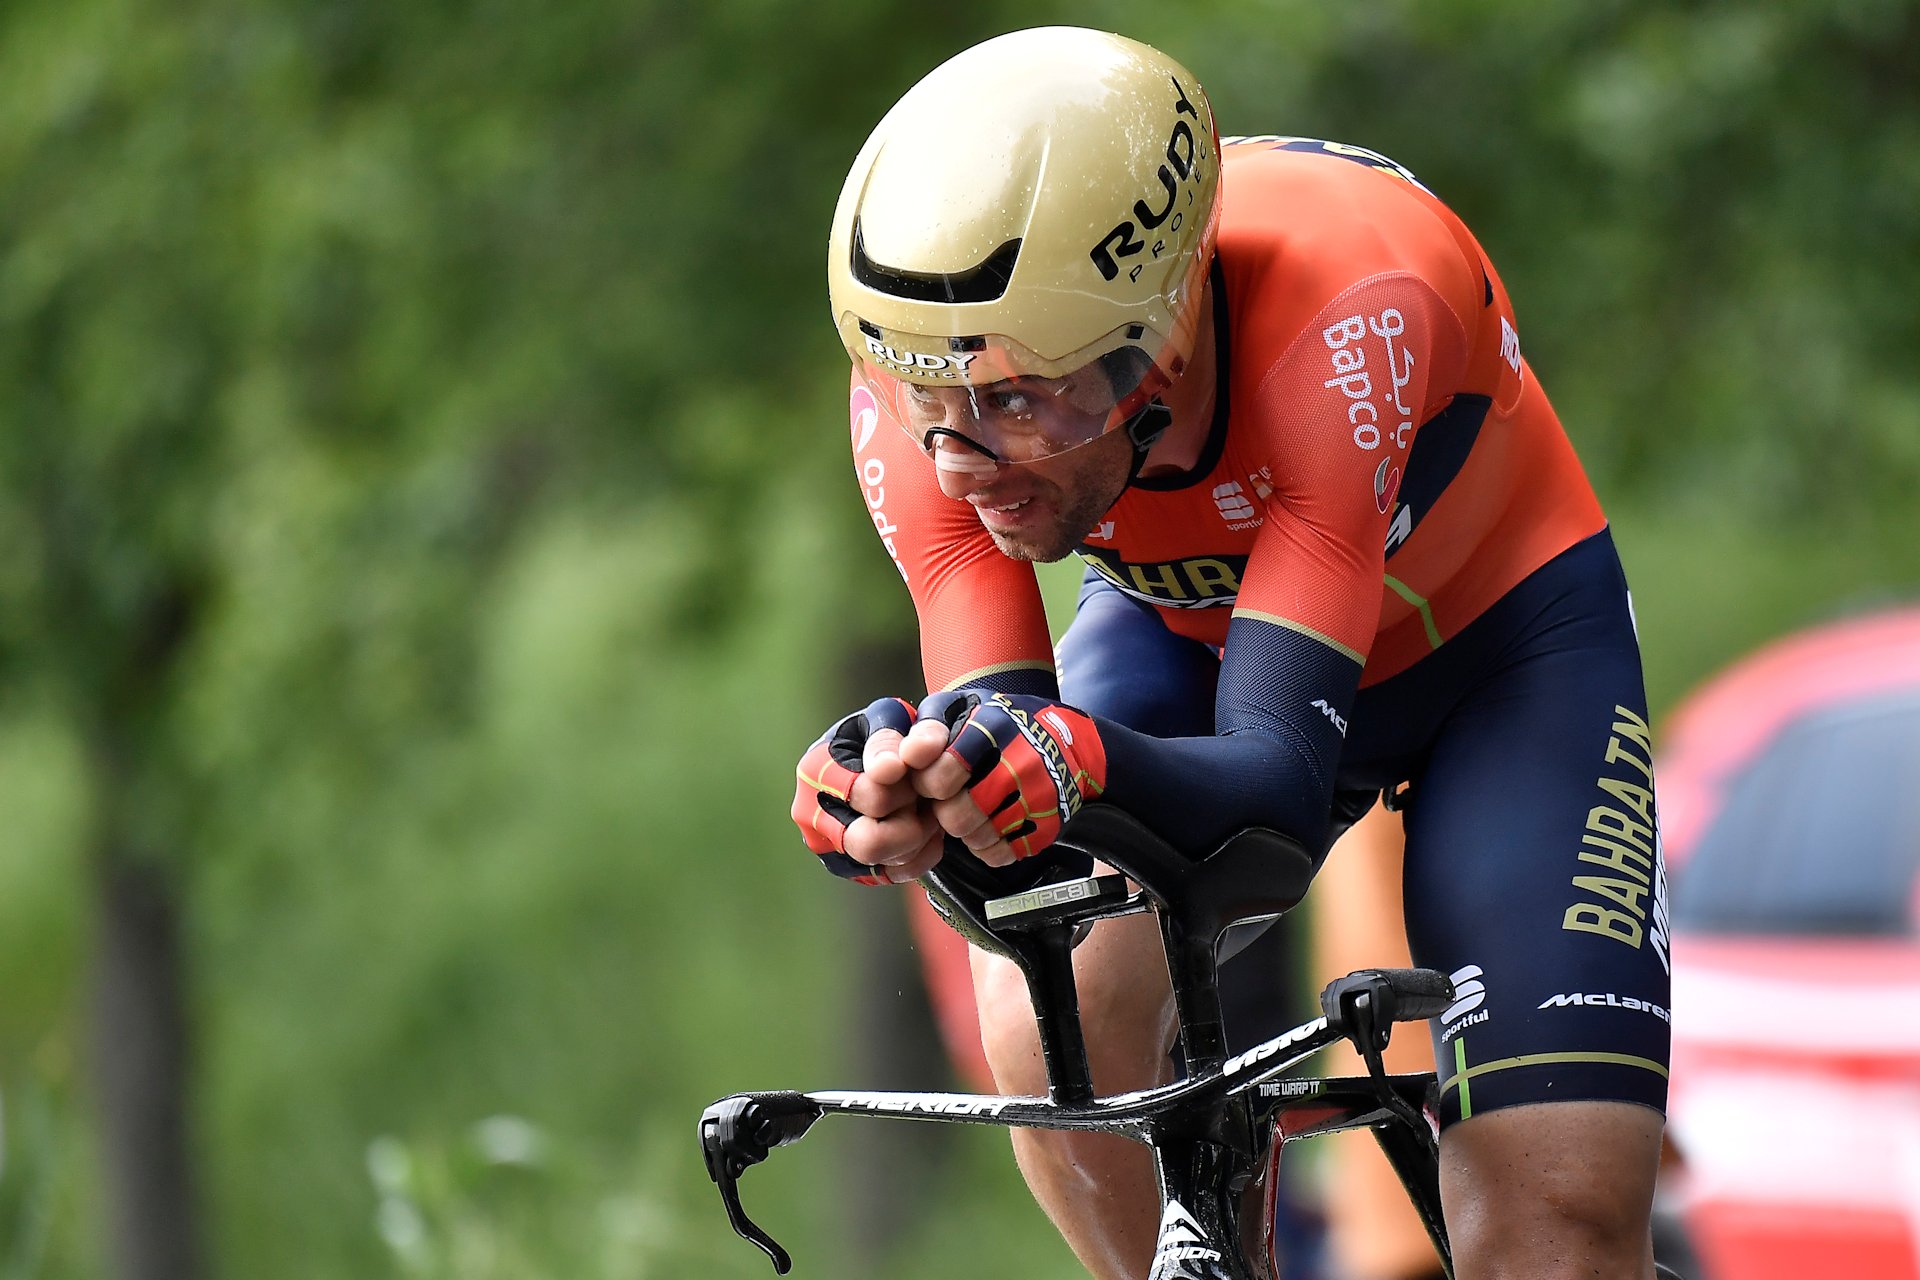 Giro d’Italia 2019. Vincenzo Nibali: “we wtorek zaczyna się nowe Giro”